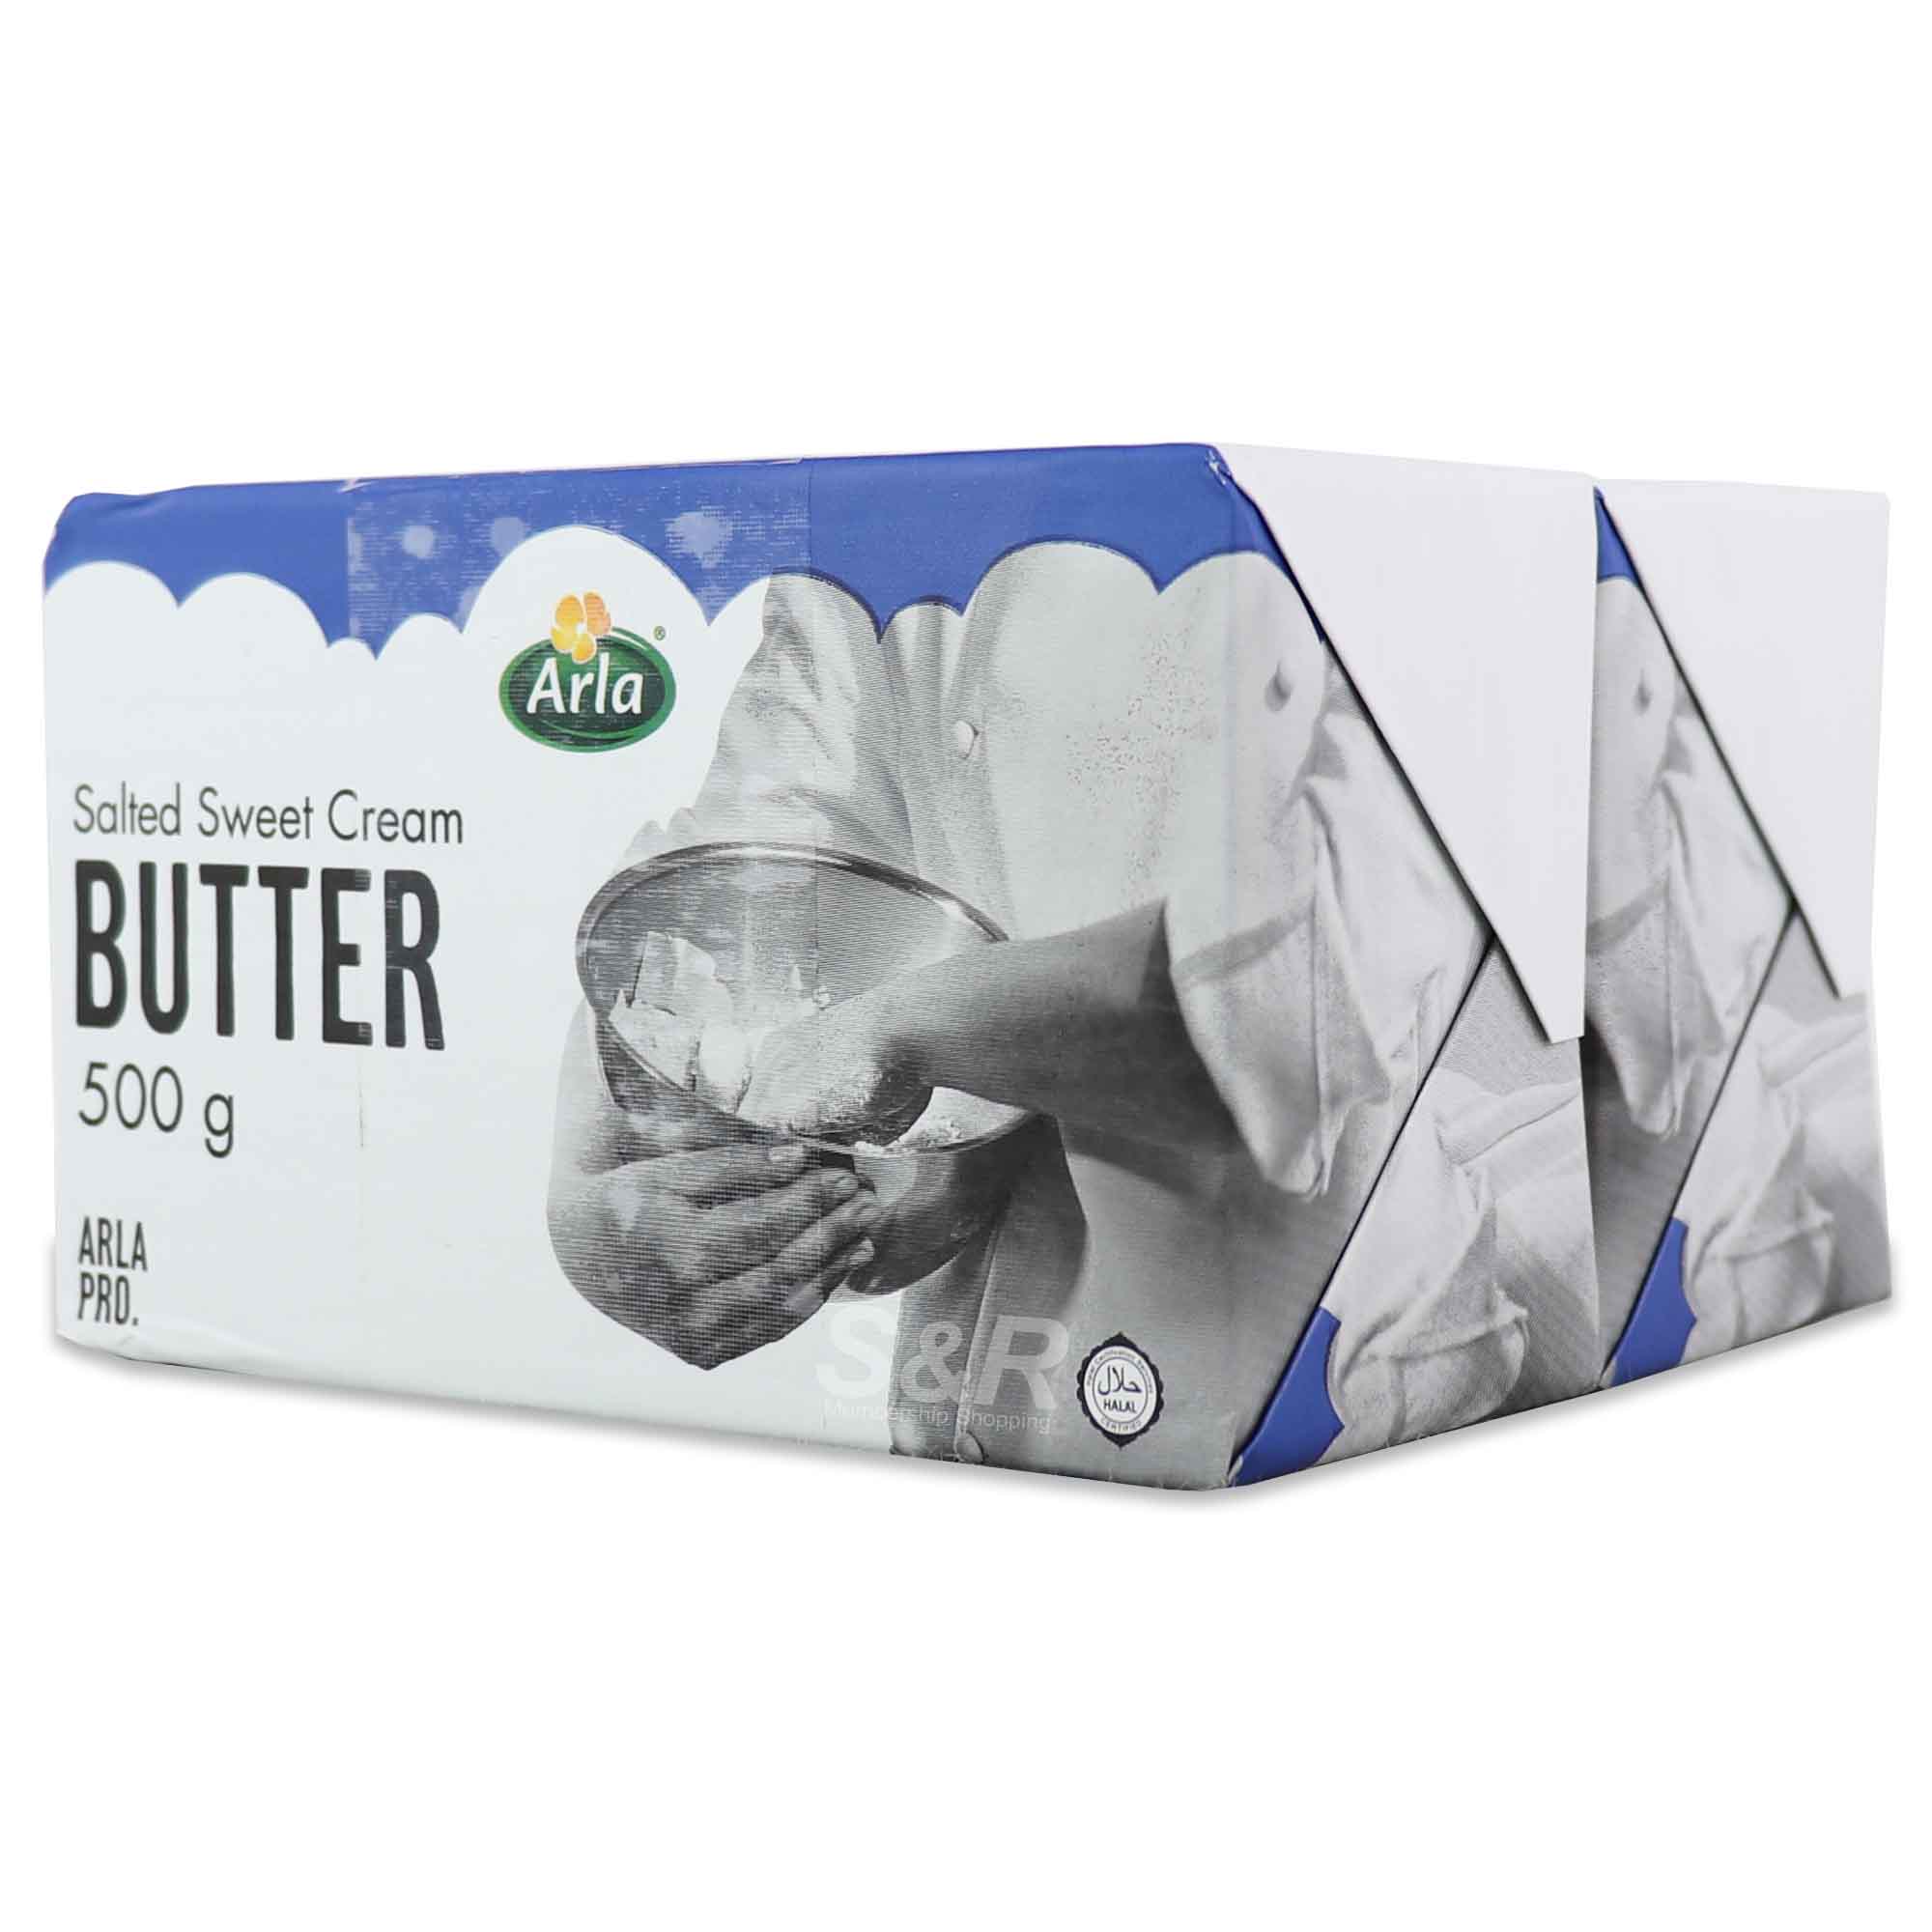 Arla Salted Sweet Cream Butter 500g